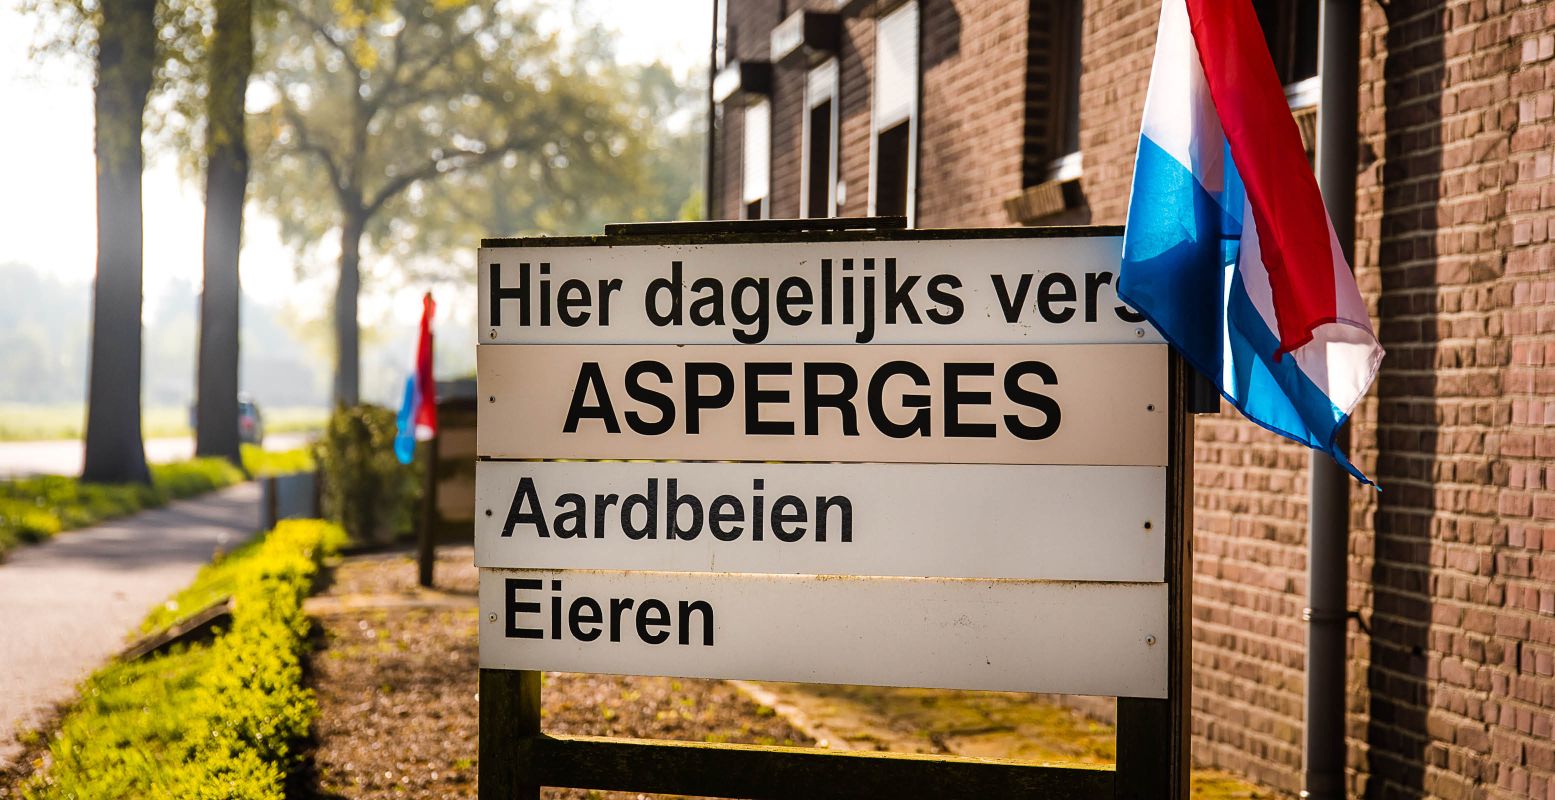 Scoor lekkere asperges direct van het land! Foto: Limburg Marketing © Petra Lenssen